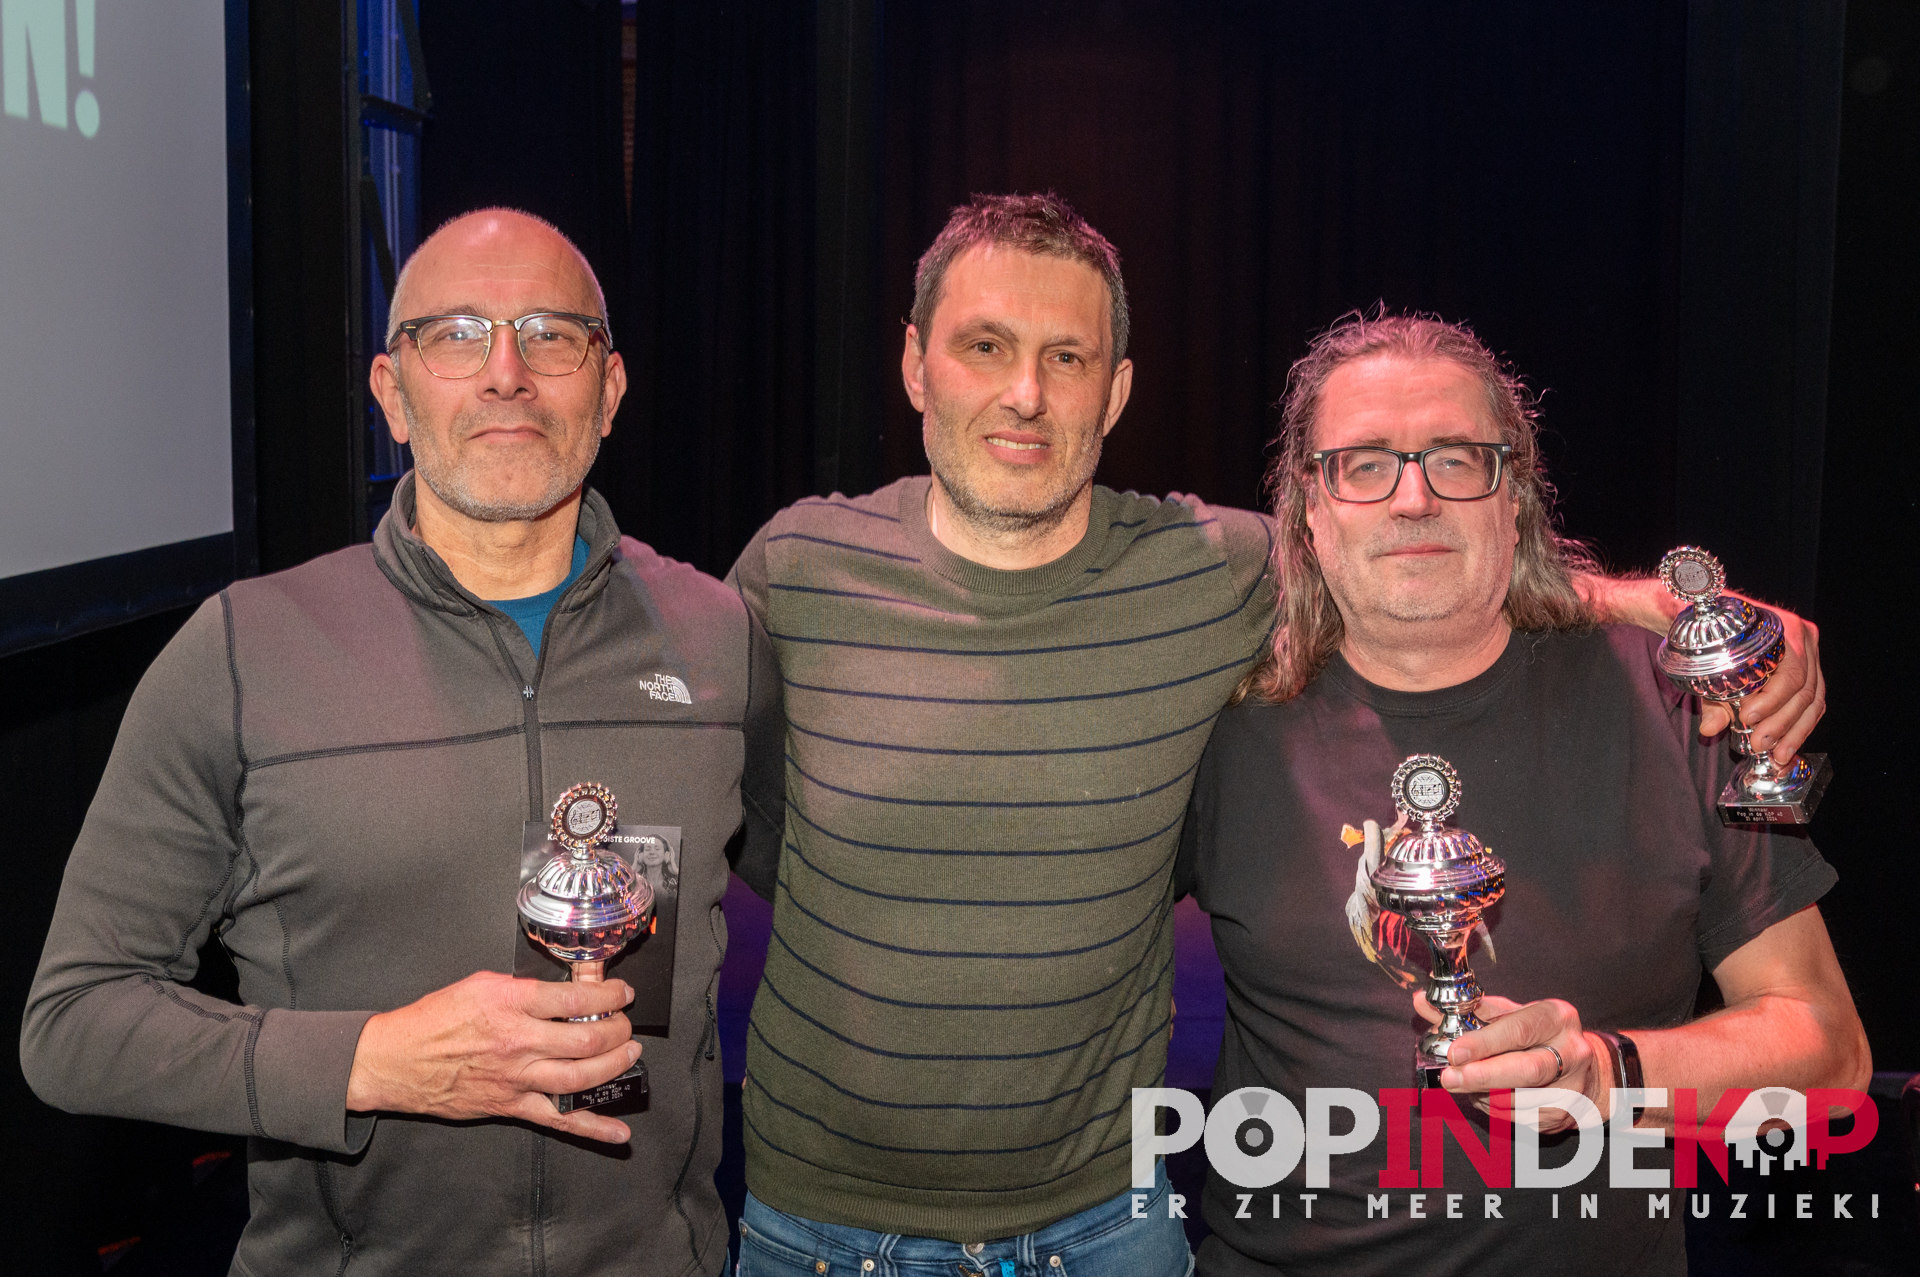 Rukwind 11 - Winnaars Pop in de Kop 40